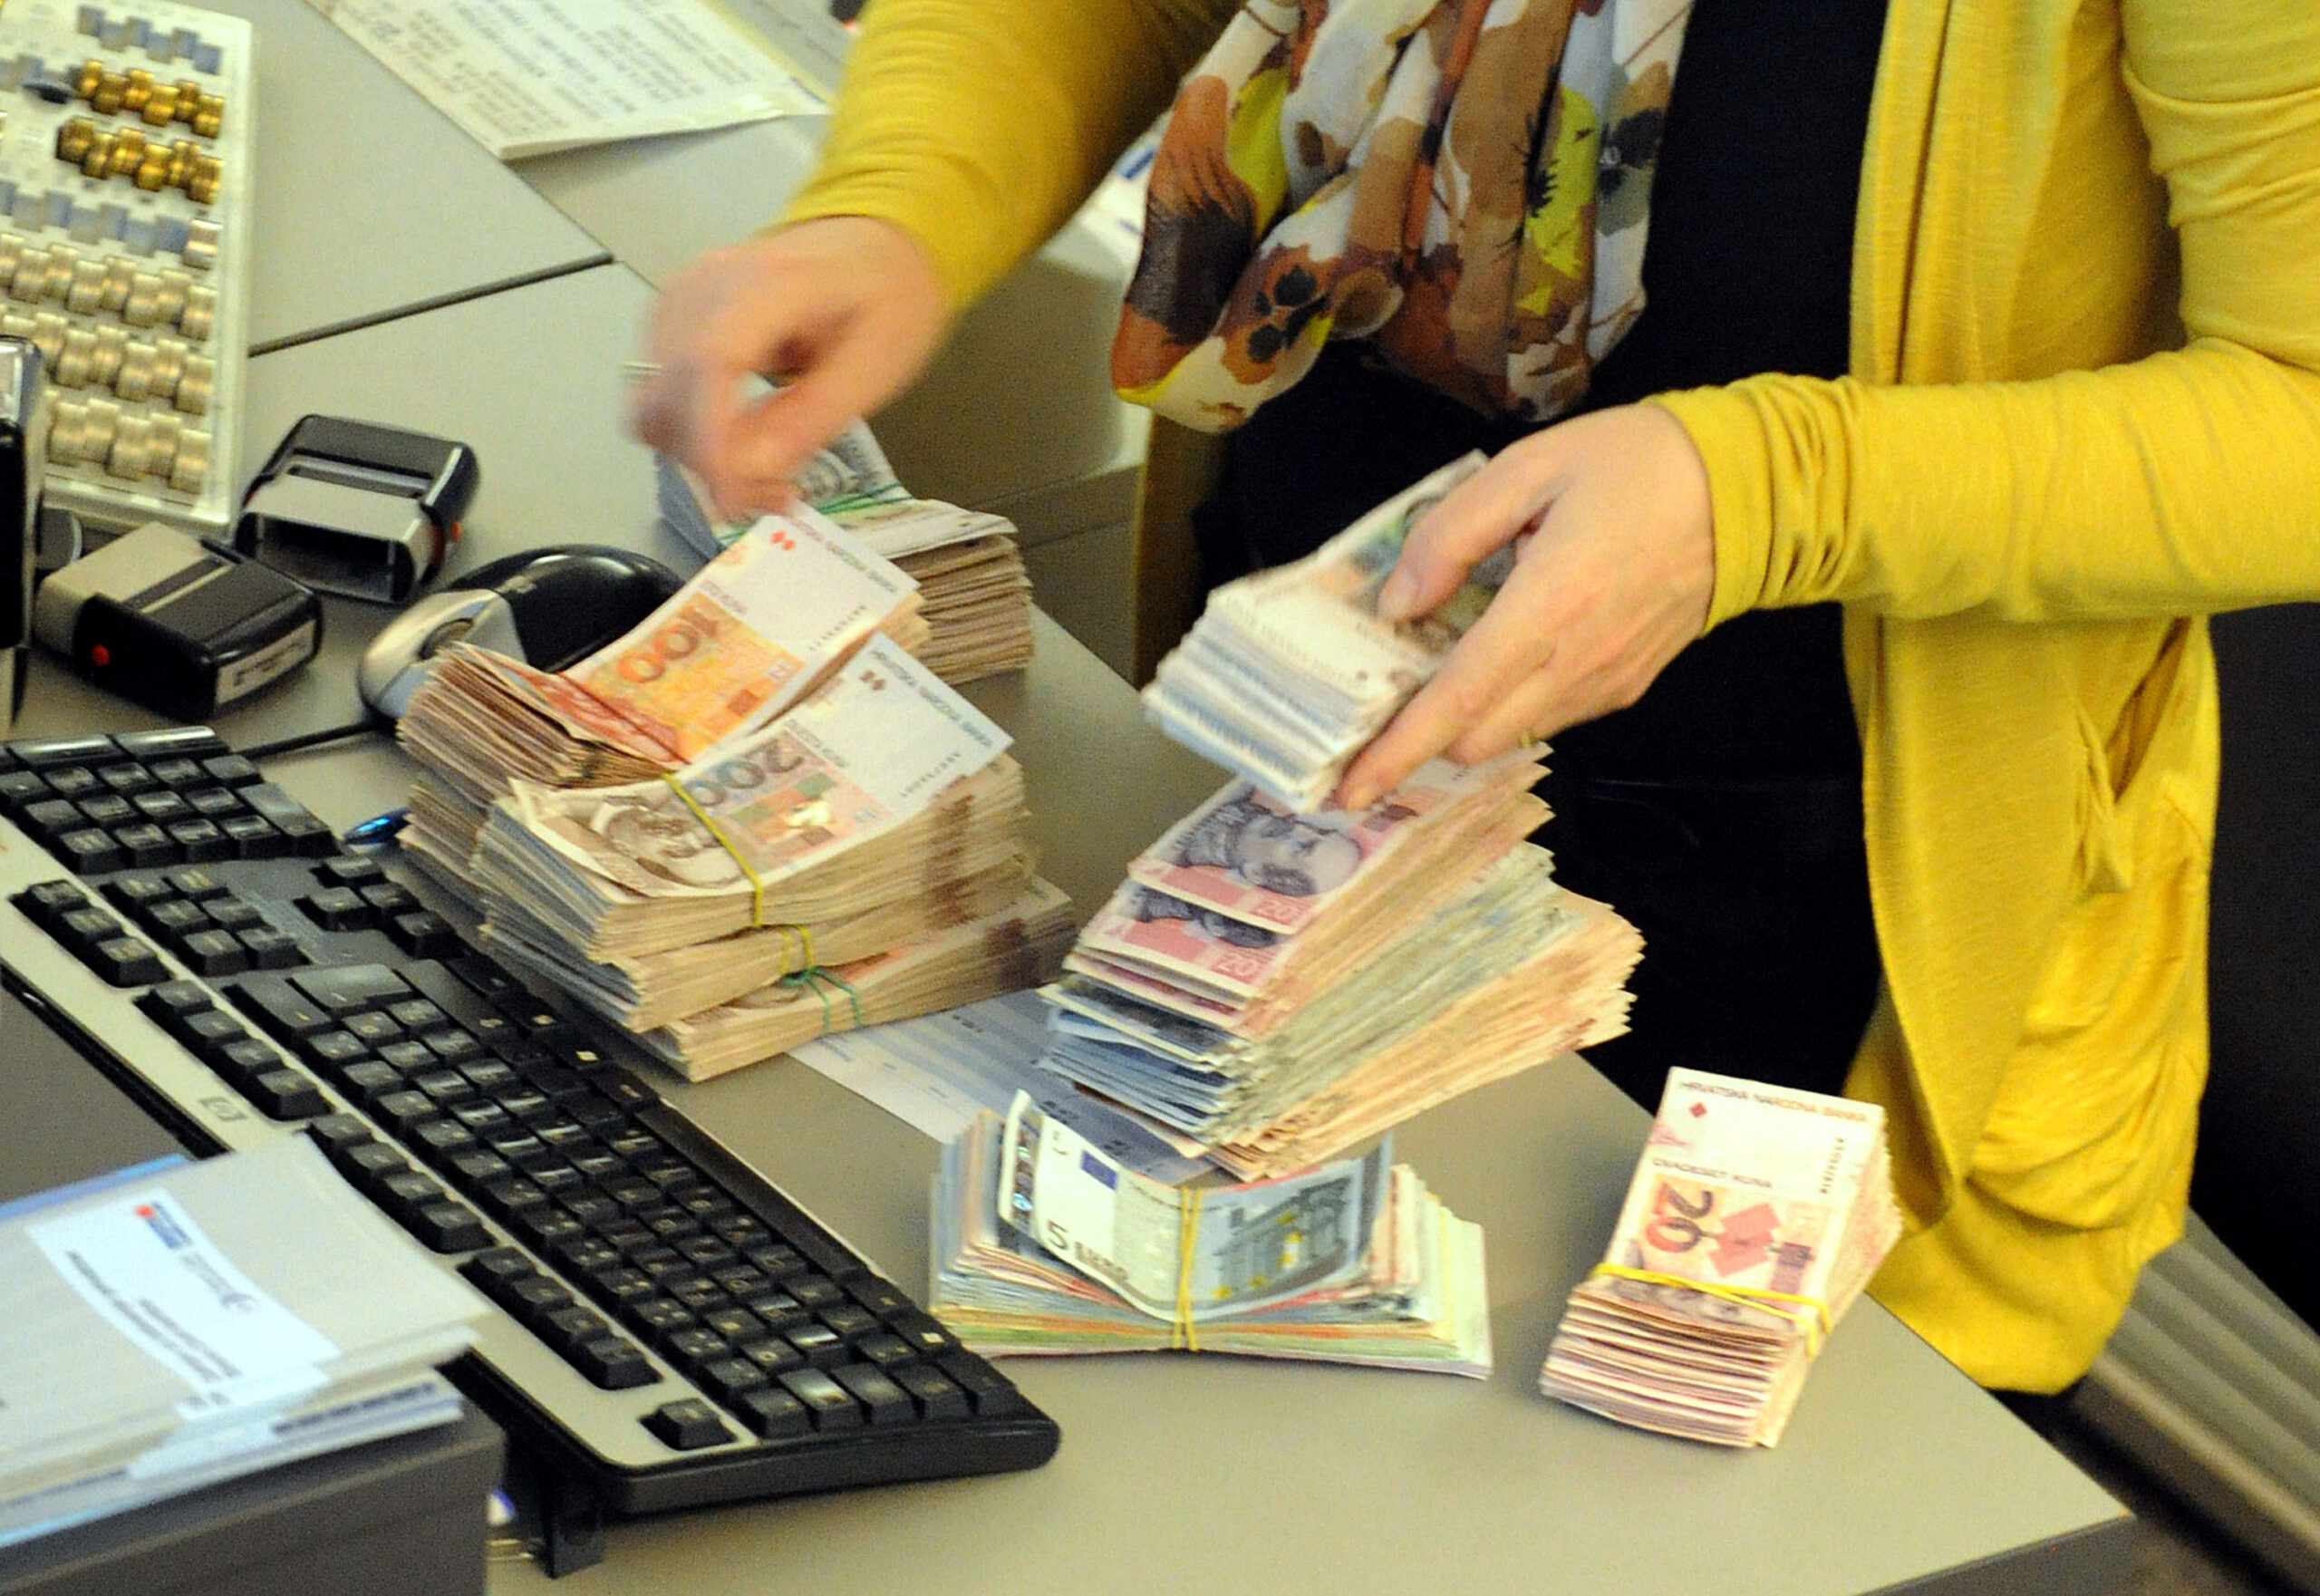 Zamjena kune eurom dodatno će ubrzati rast depozita građana u bankama / Foto Arhiva NL